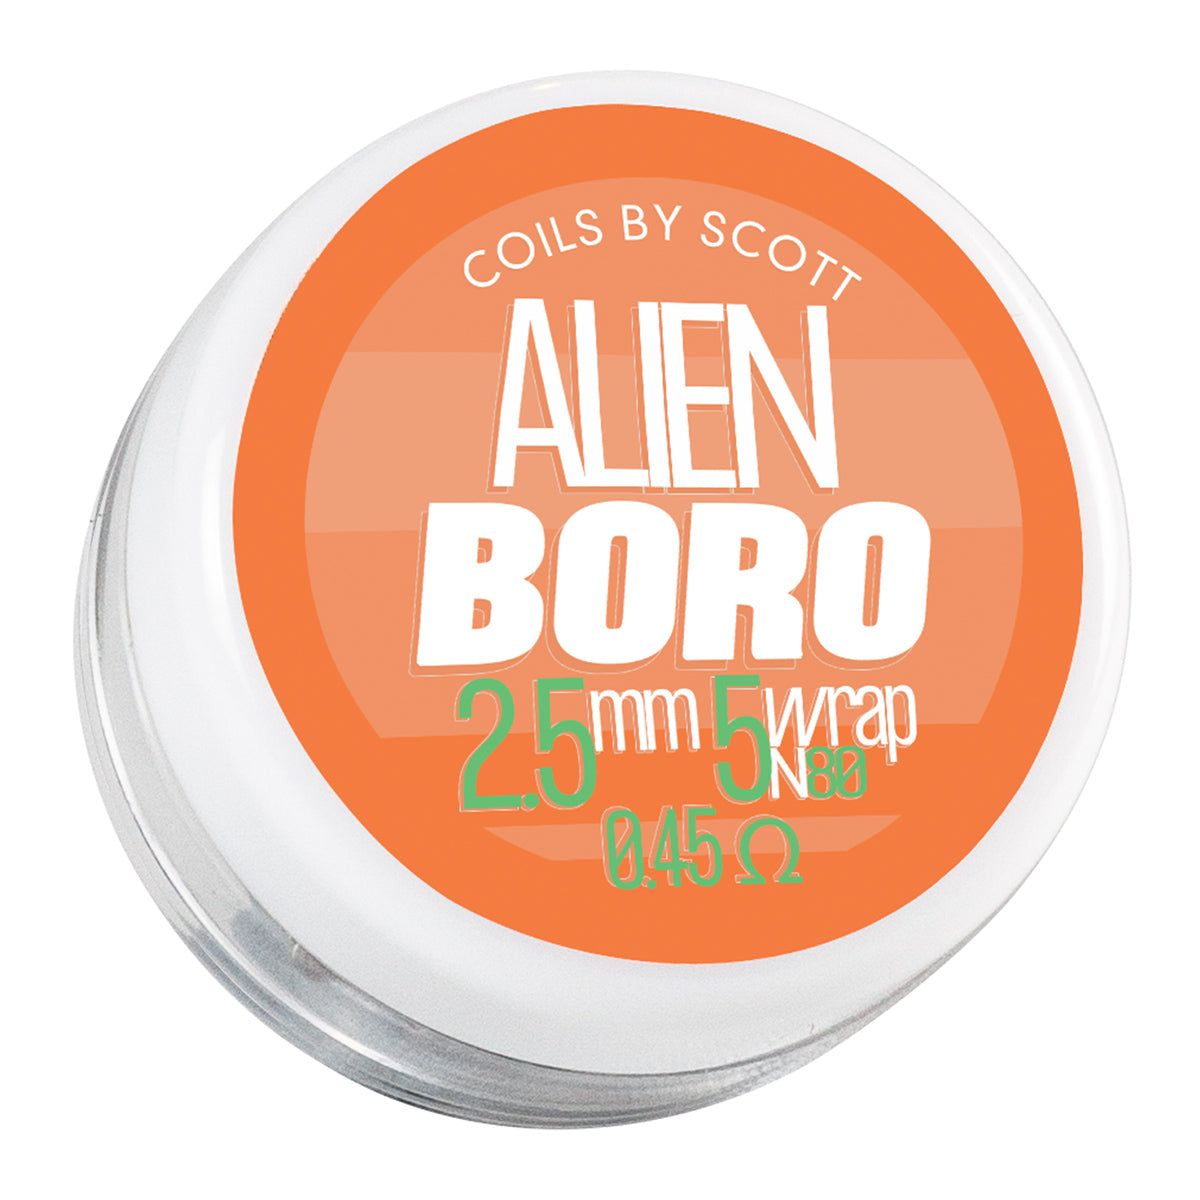 0.45 Boro Alien Clapton Coils by Coils by Scott